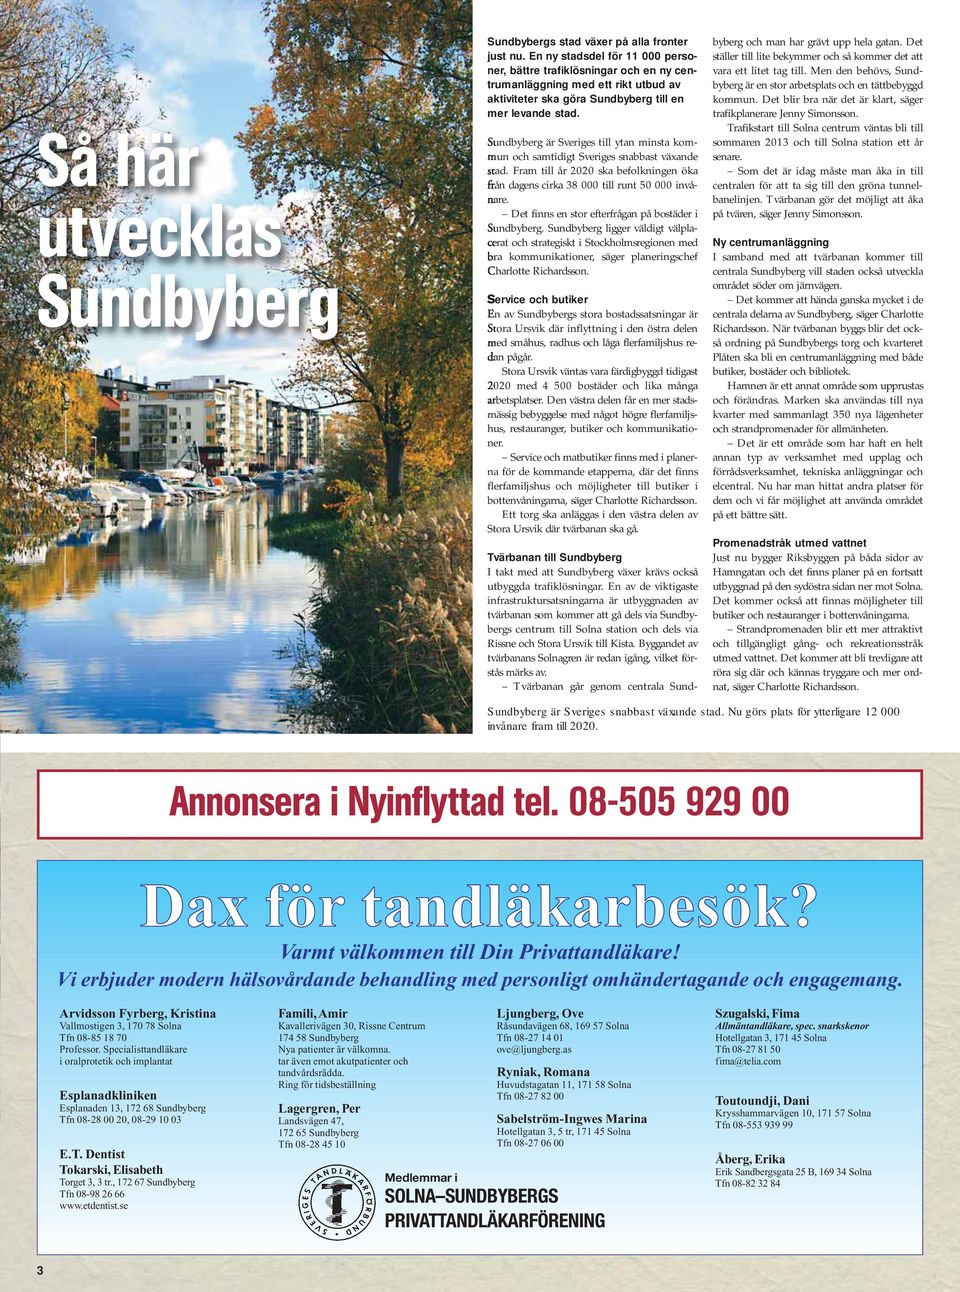 Sundbyberg är Sveriges till ytan minsta kommun och samtidigt Sveriges snabbast växande stad. Fram till år 2020 ska befolkningen öka från dagens cirka 38 000 till runt 50 000 invånare.